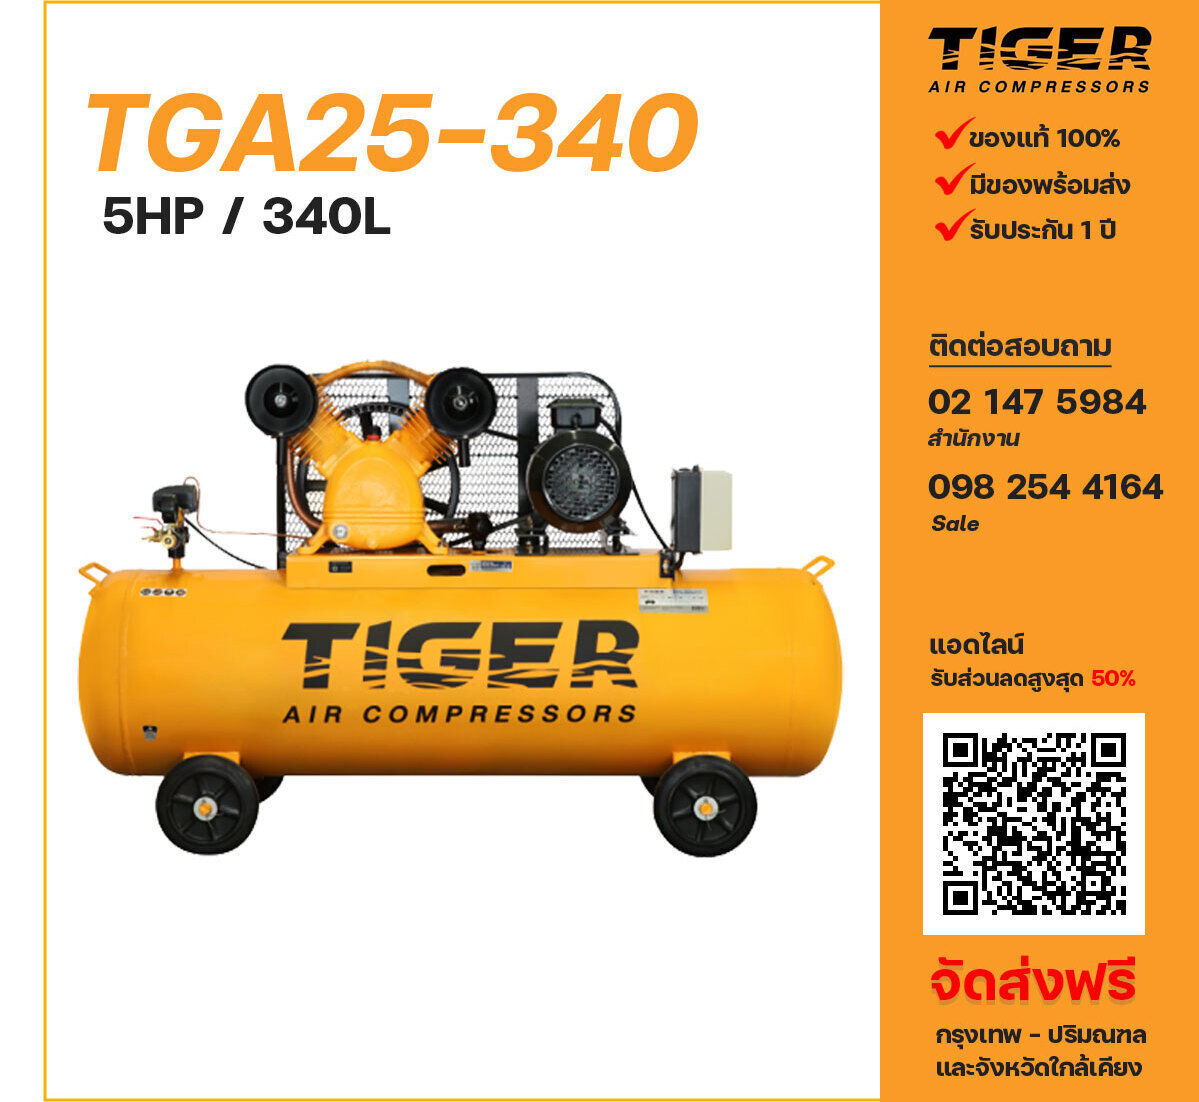 ปั๊มลมไทเกอร์ TIGER TGA25-340 380V ปั๊มลมลูกสูบ ขนาด 2 สูบ 5 แรงม้า 340 ลิตร TIGER พร้อมมอเตอร์ ไฟ 380V ส่งฟรี กรุงเทพฯ-ปริมณฑล รับประกัน 1 ปี